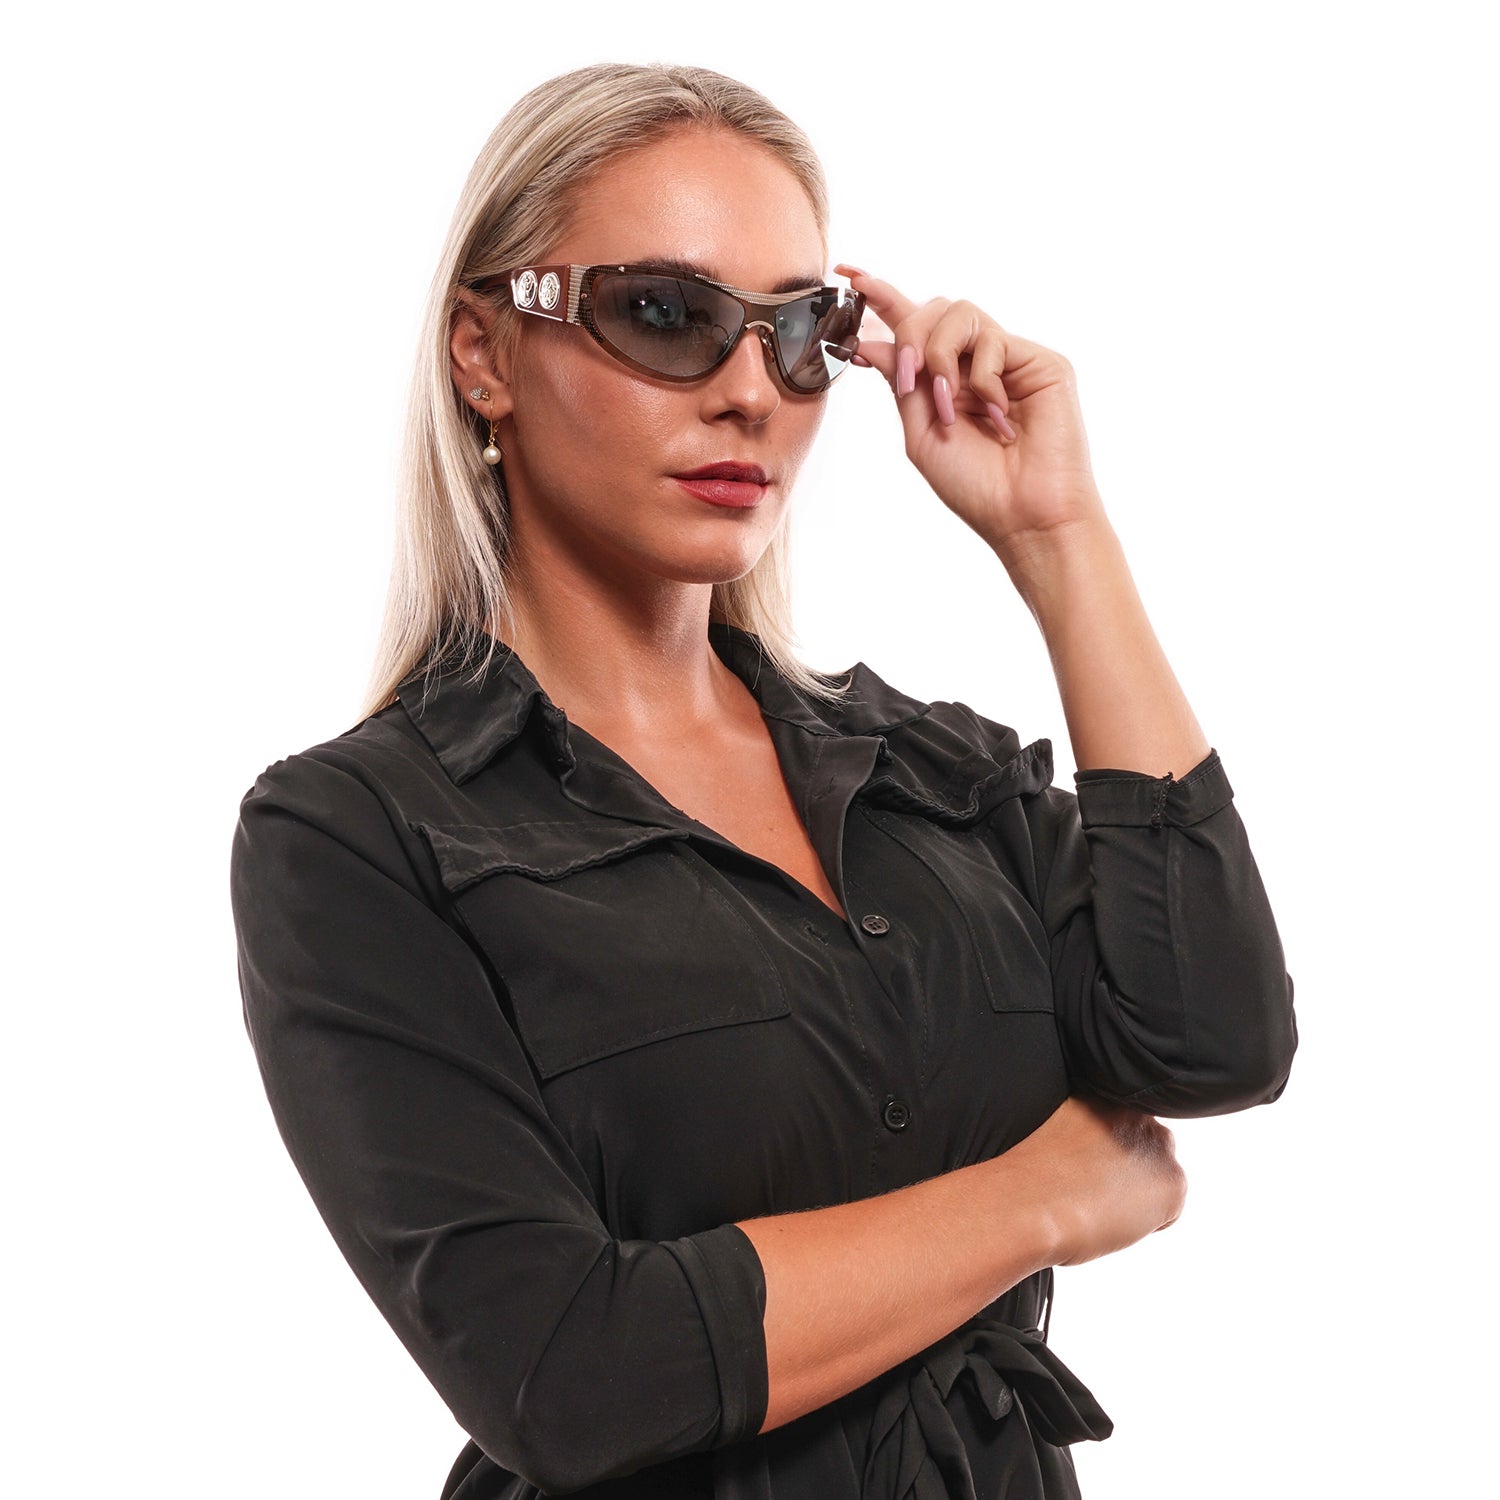 Roberto Cavalli Brown Sunglasses for Woman - Fizigo